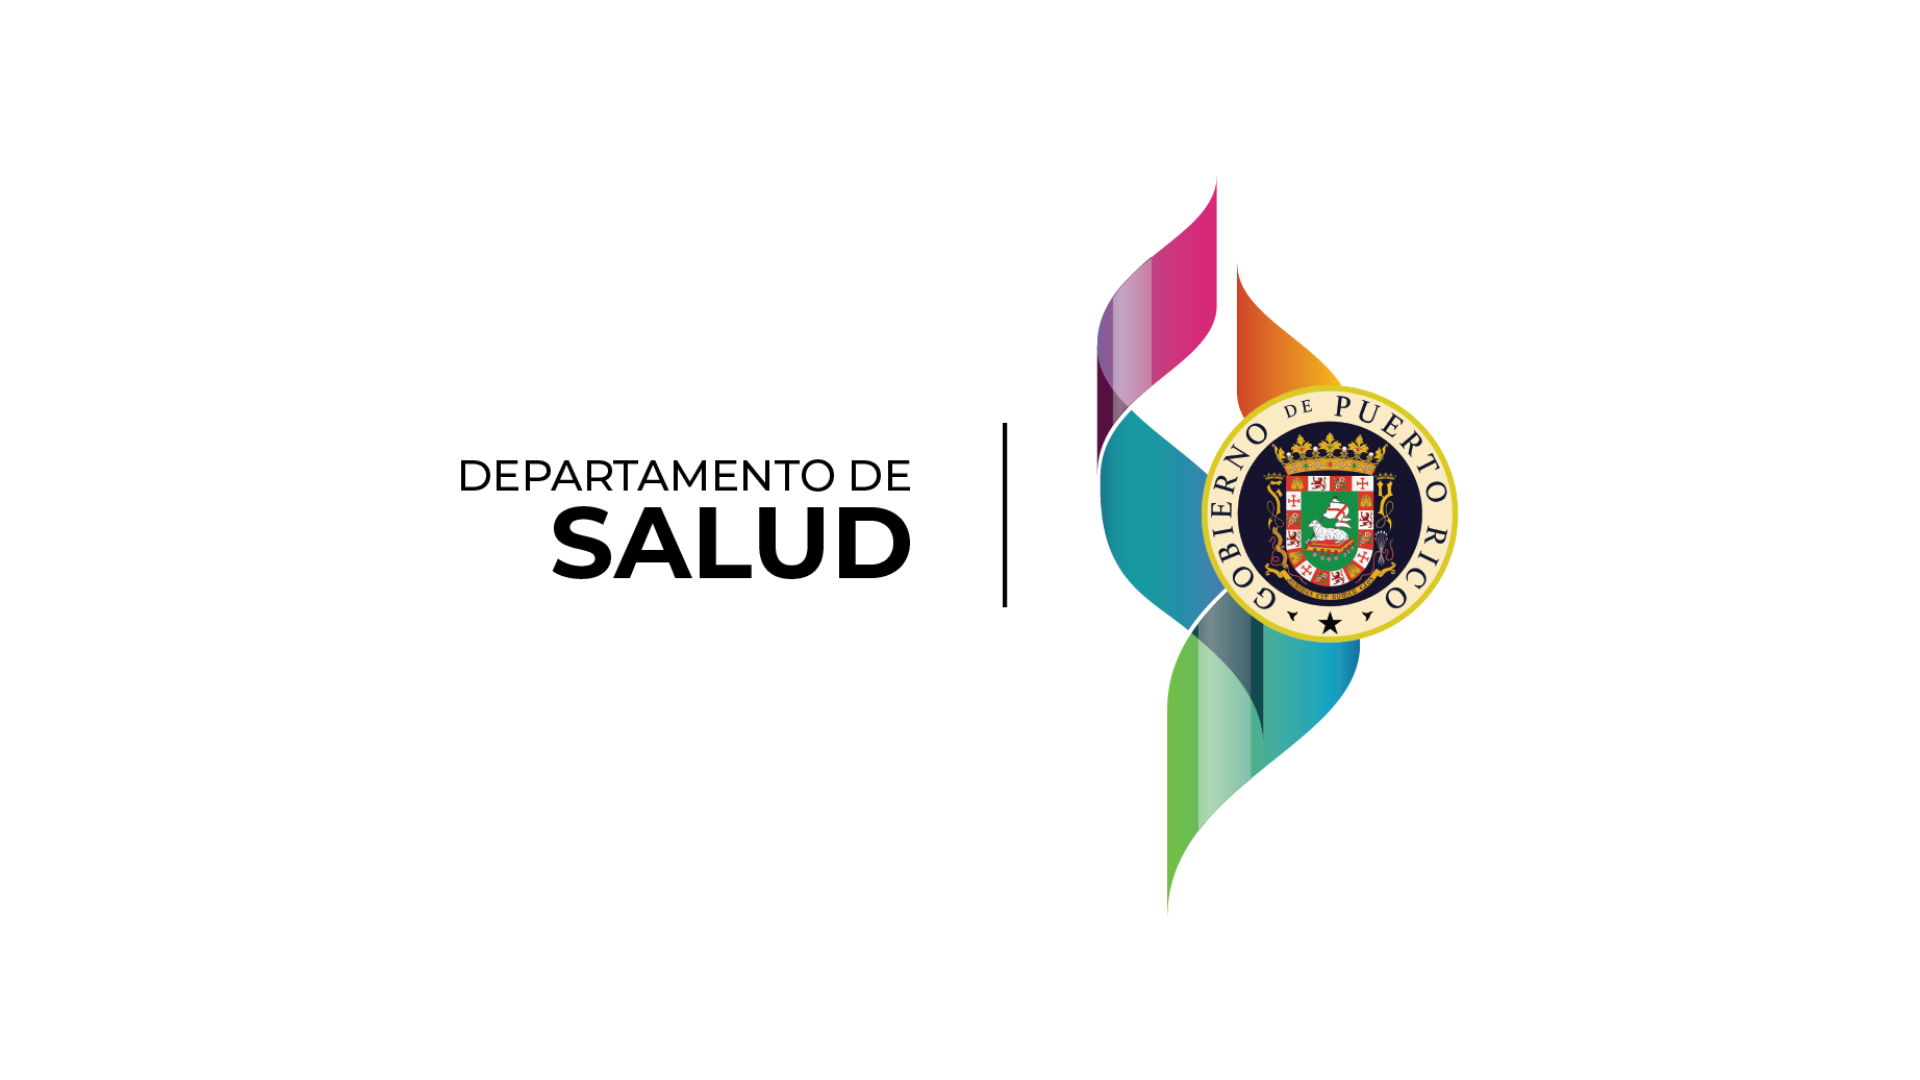 Imagen del logo del Departamento de Salud del Gobierno de Puerto Rico.